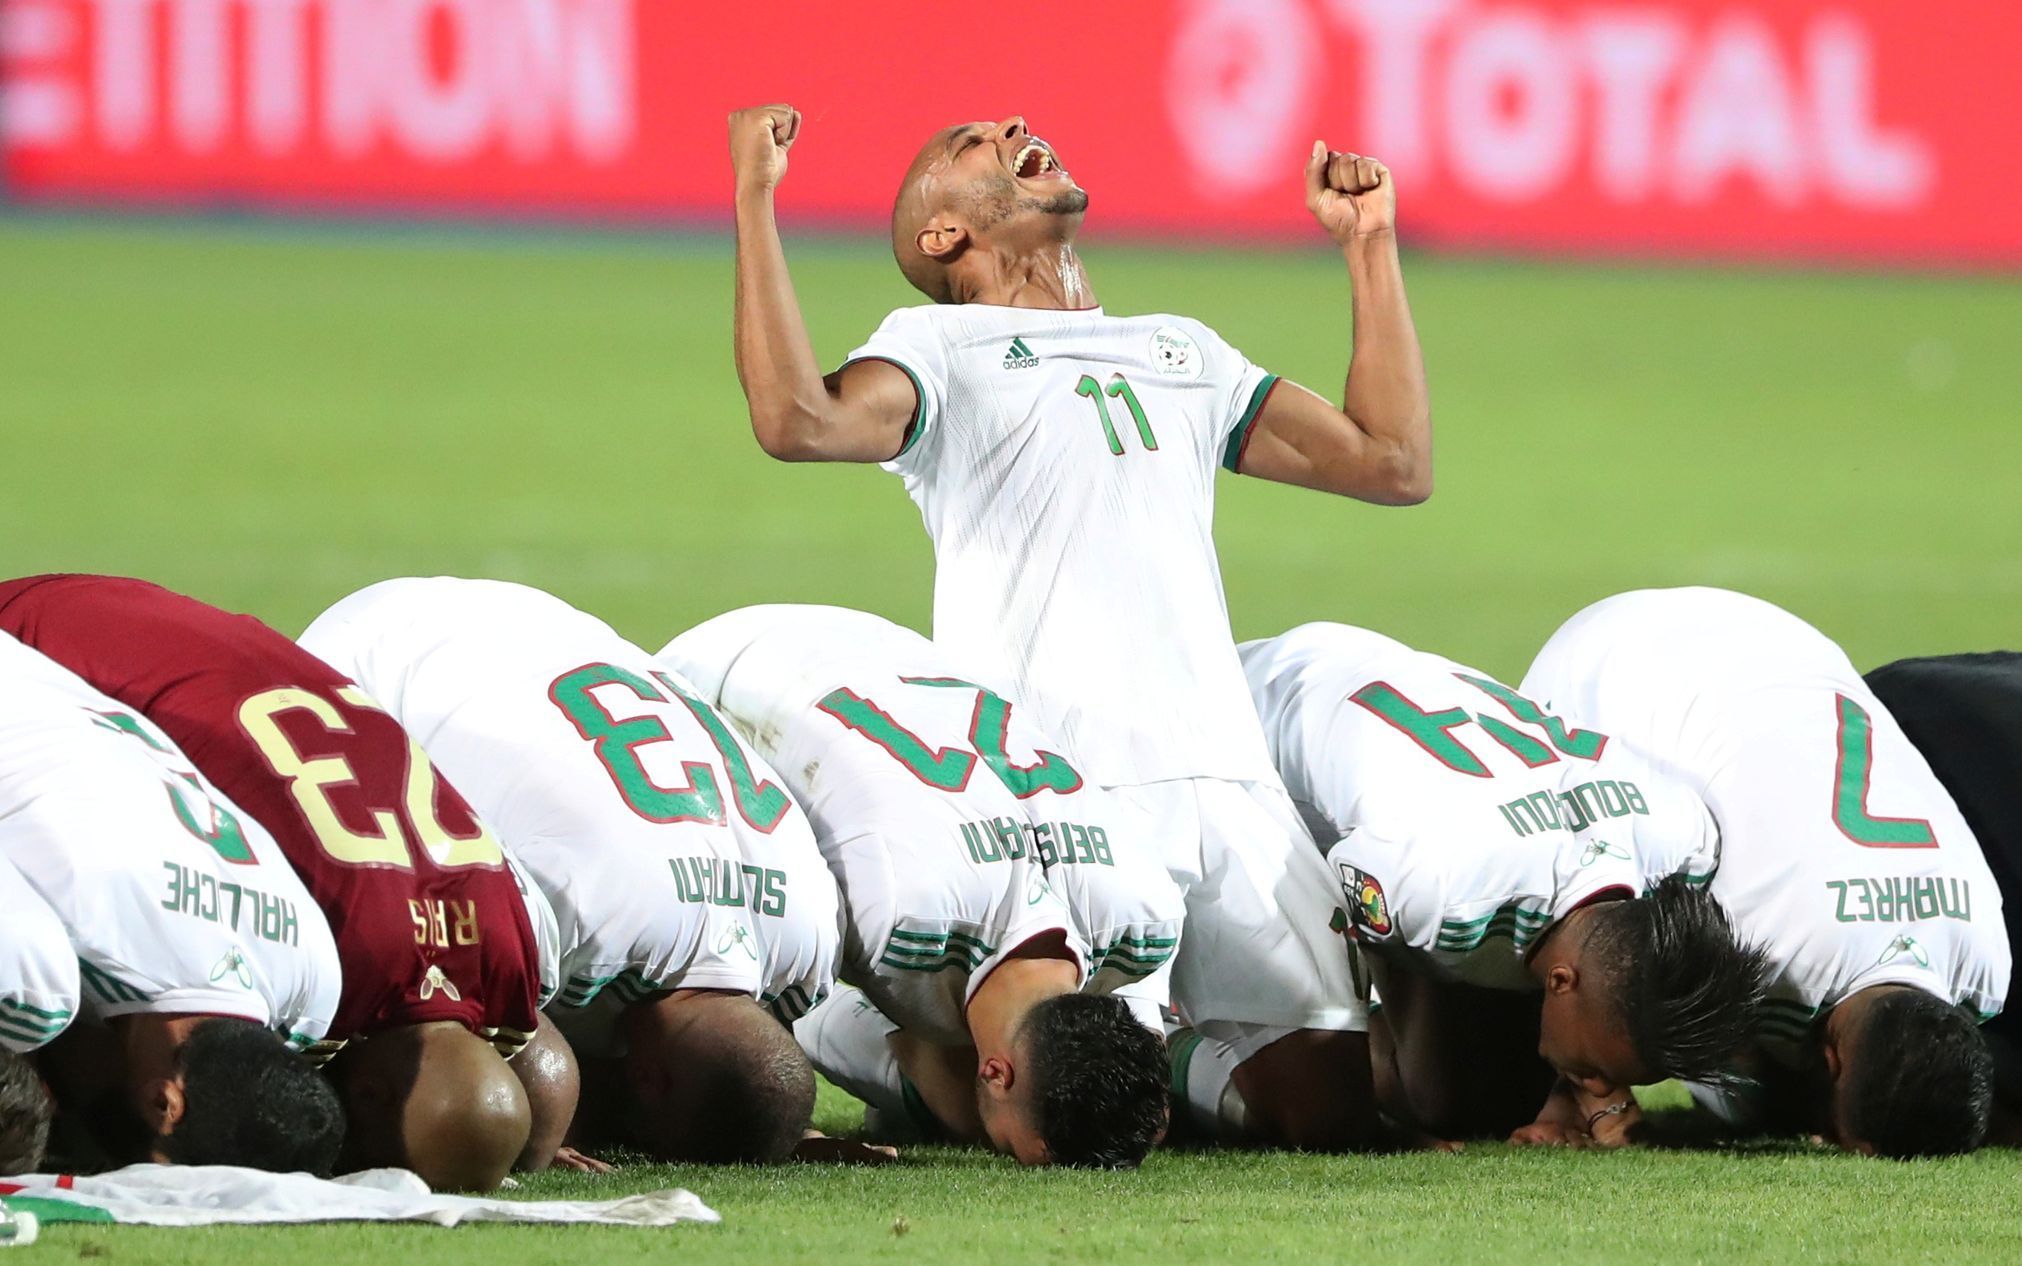 Pohár afrických národů 2019, finále Alžírsko - Senegal: Alžírští fotbalisté oslavují vítězství 1:0.